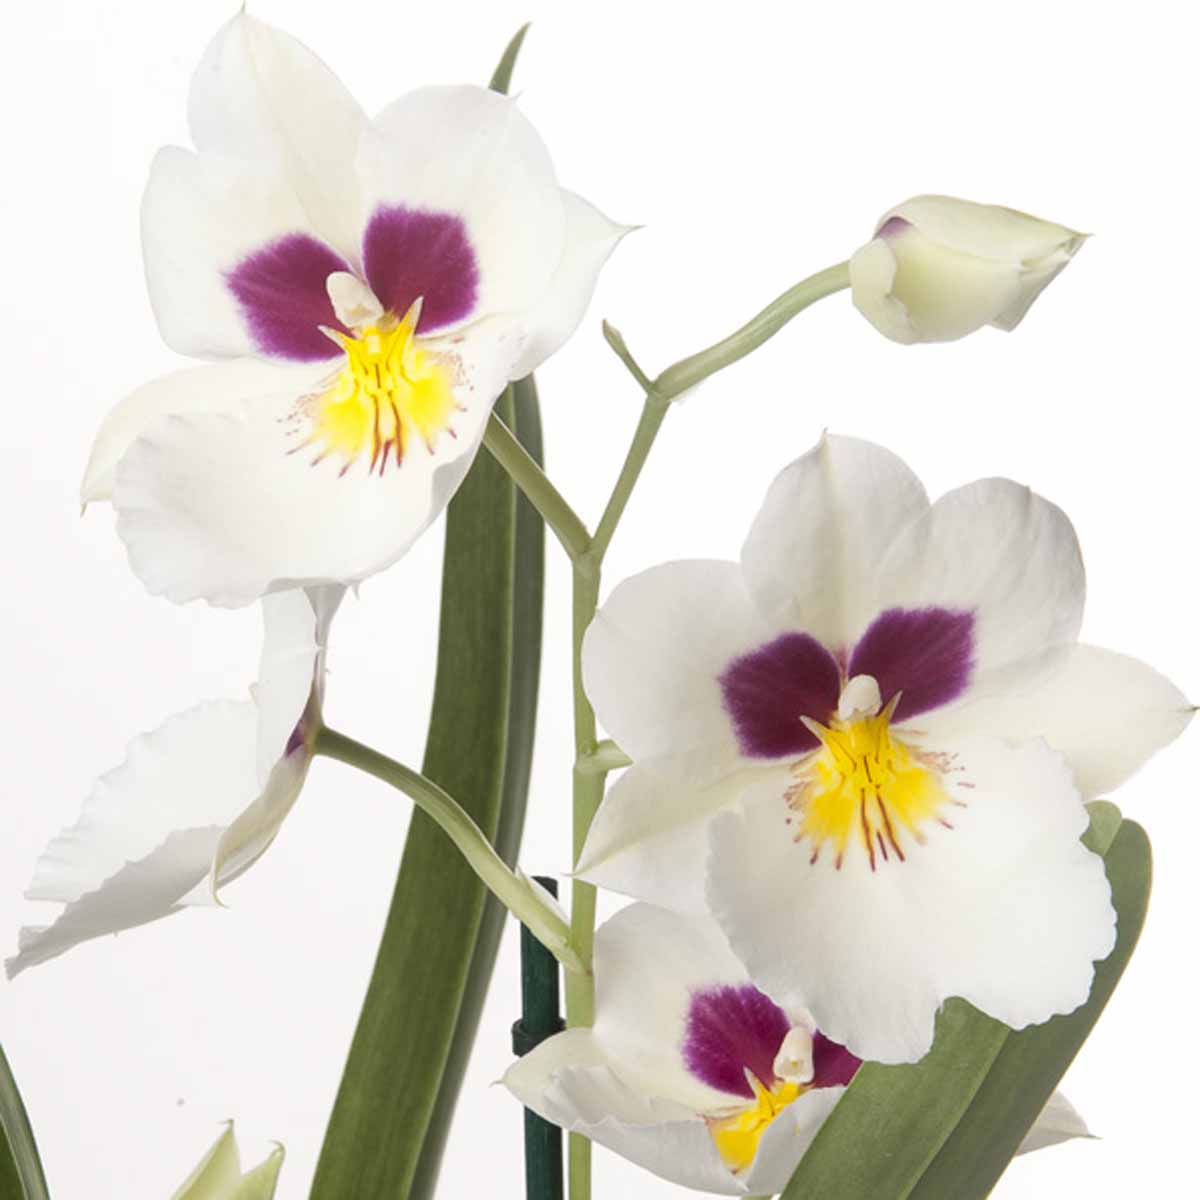 L’orchidea, dall’impollinazione alle sue caratteristiche